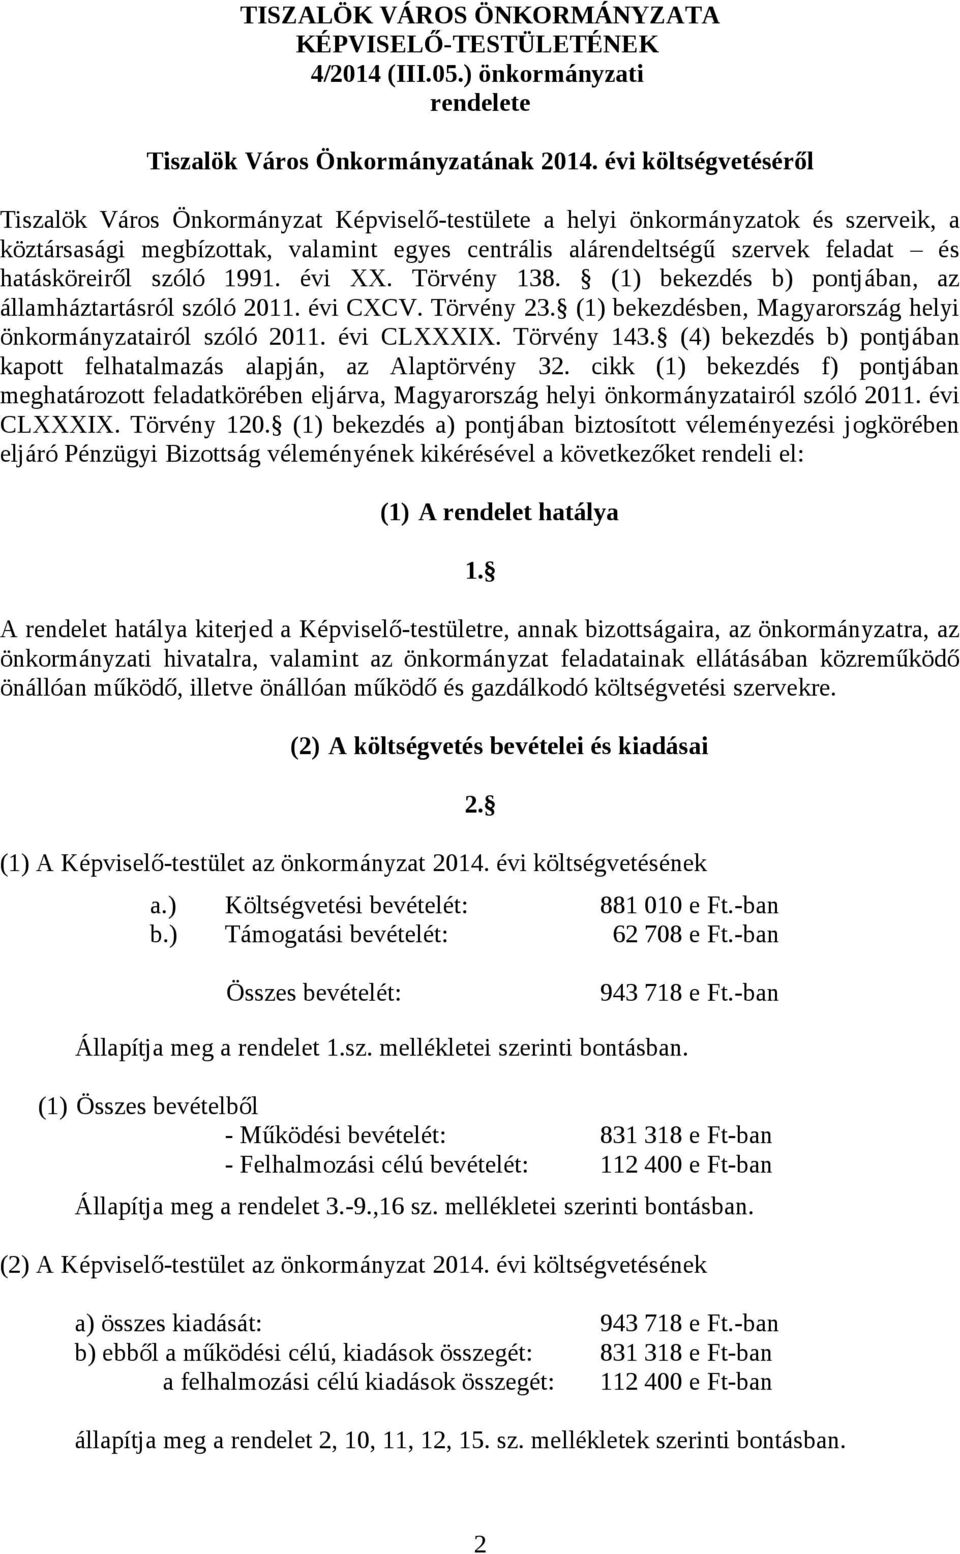 hatásköreiről szóló 1991. évi XX. Törvény 138. (1) bekezdés b) pontjában, az államháztartásról szóló 2011. évi CXCV. Törvény 23. (1) bekezdésben, Magyarország helyi önkormányzatairól szóló 2011.